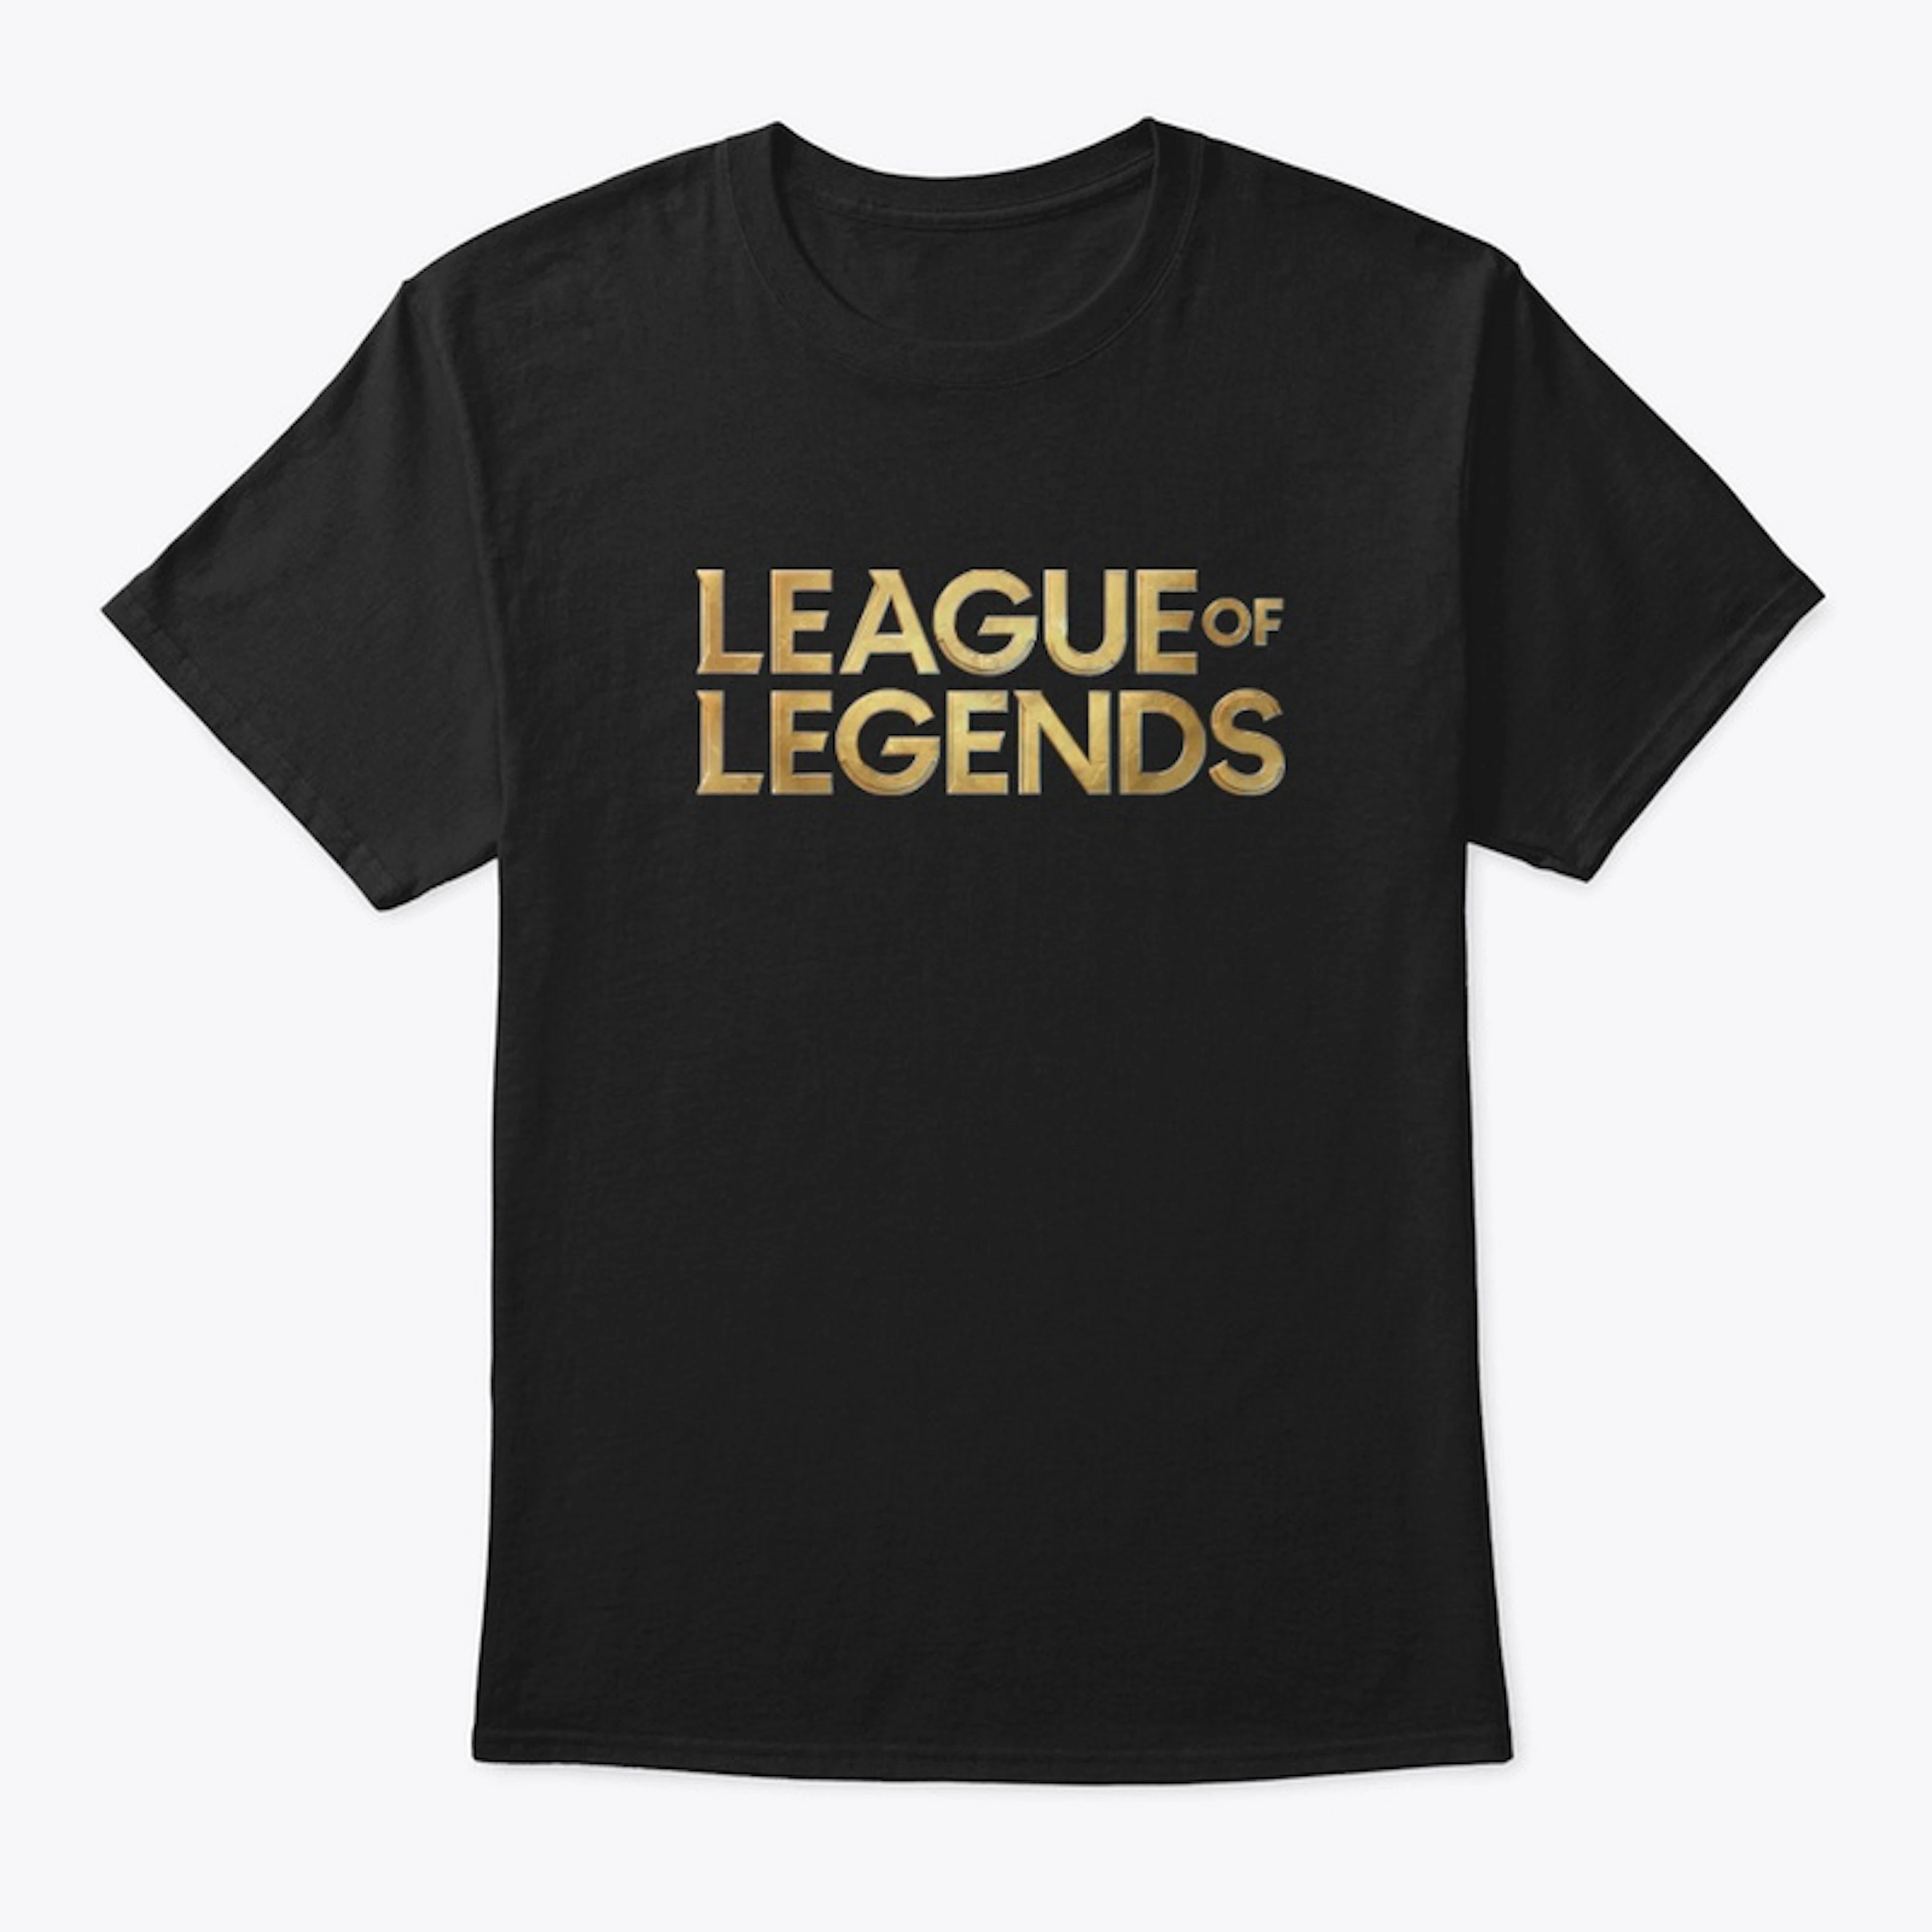 League of Legends Merch